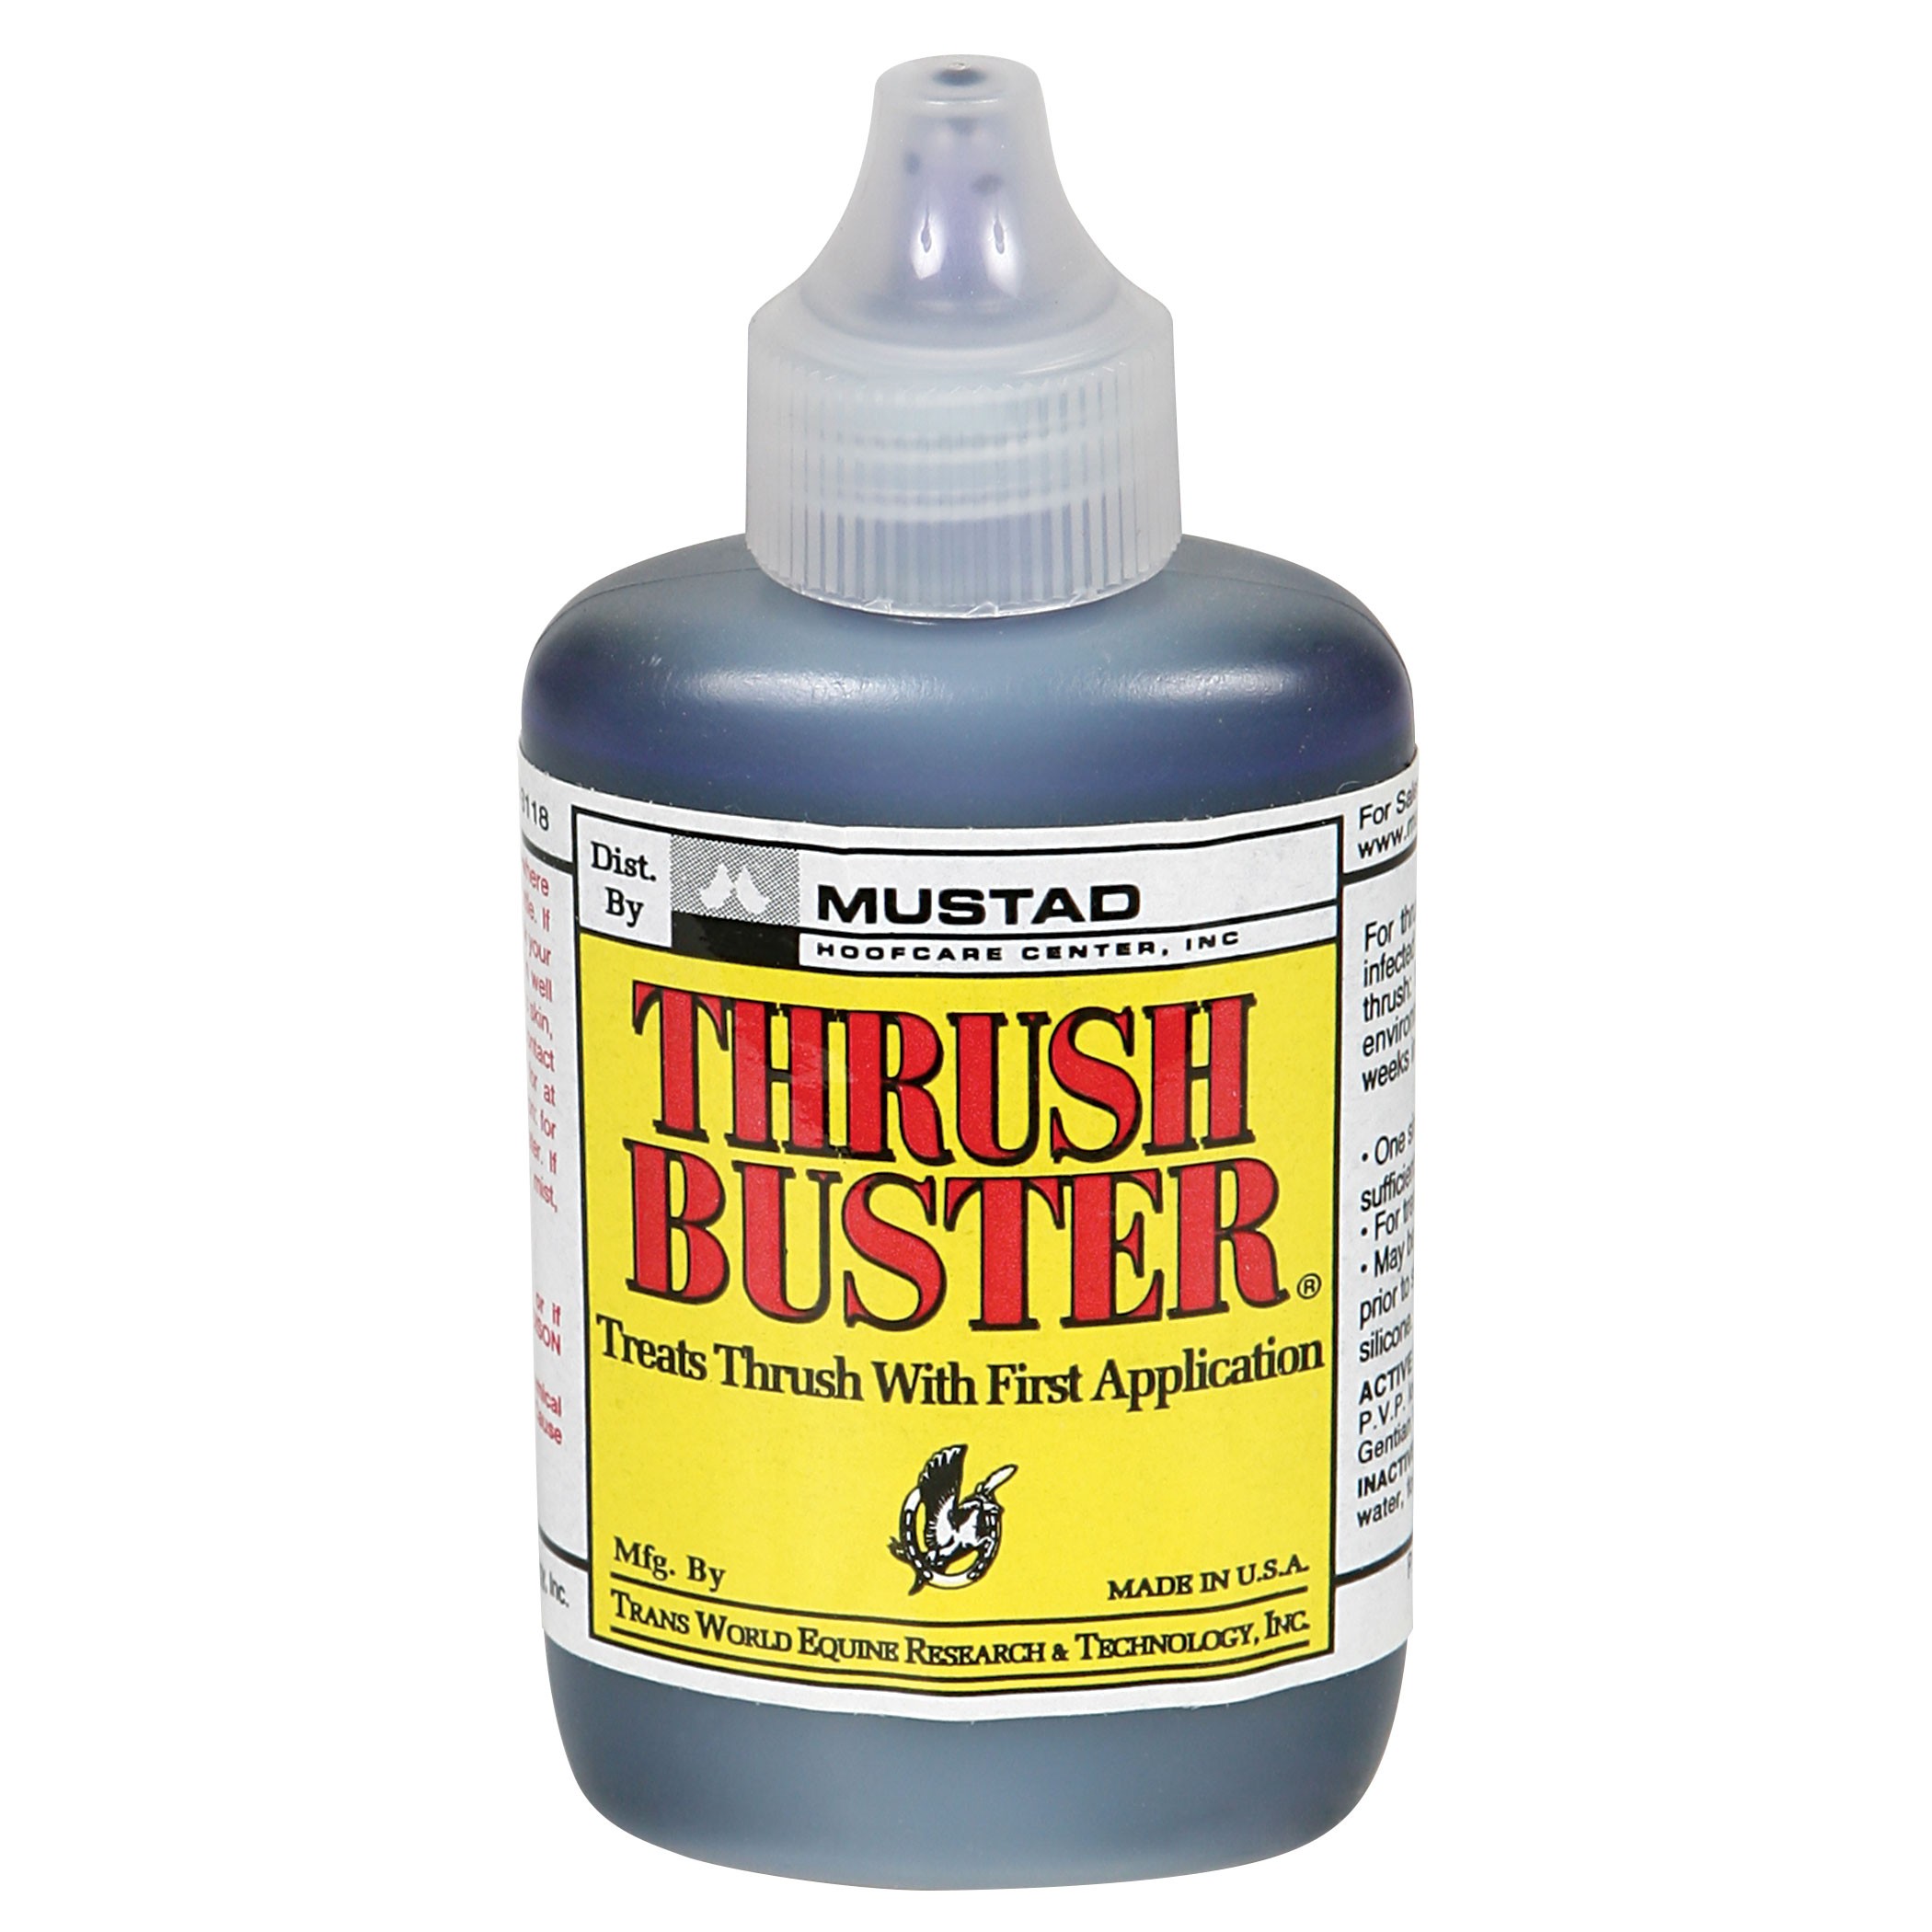 thrush buster